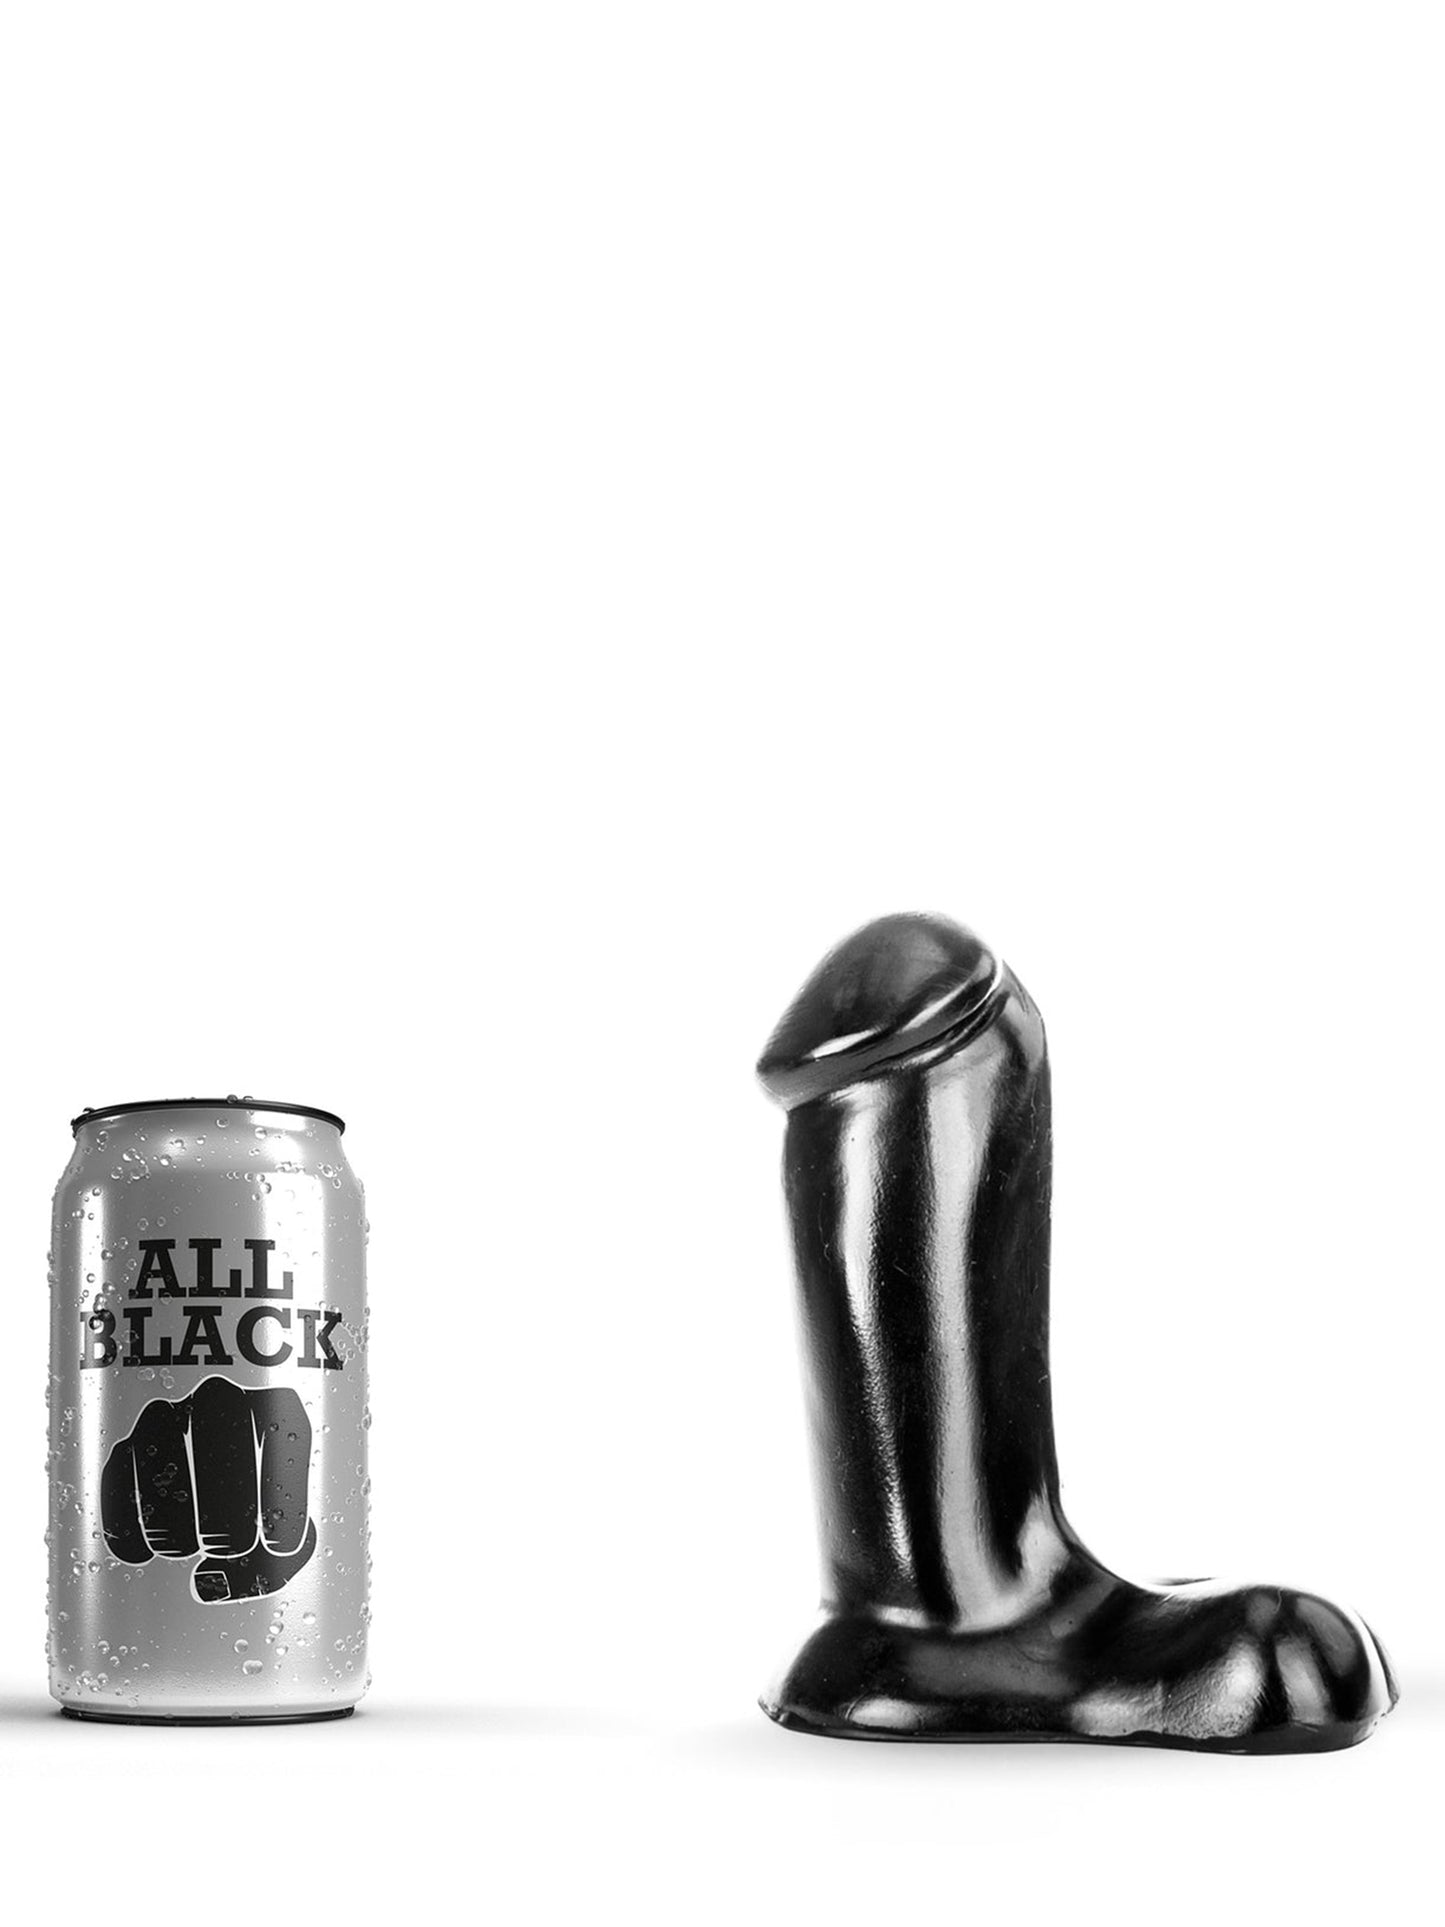 All Black - Realistic Dildo Piston 14 cm